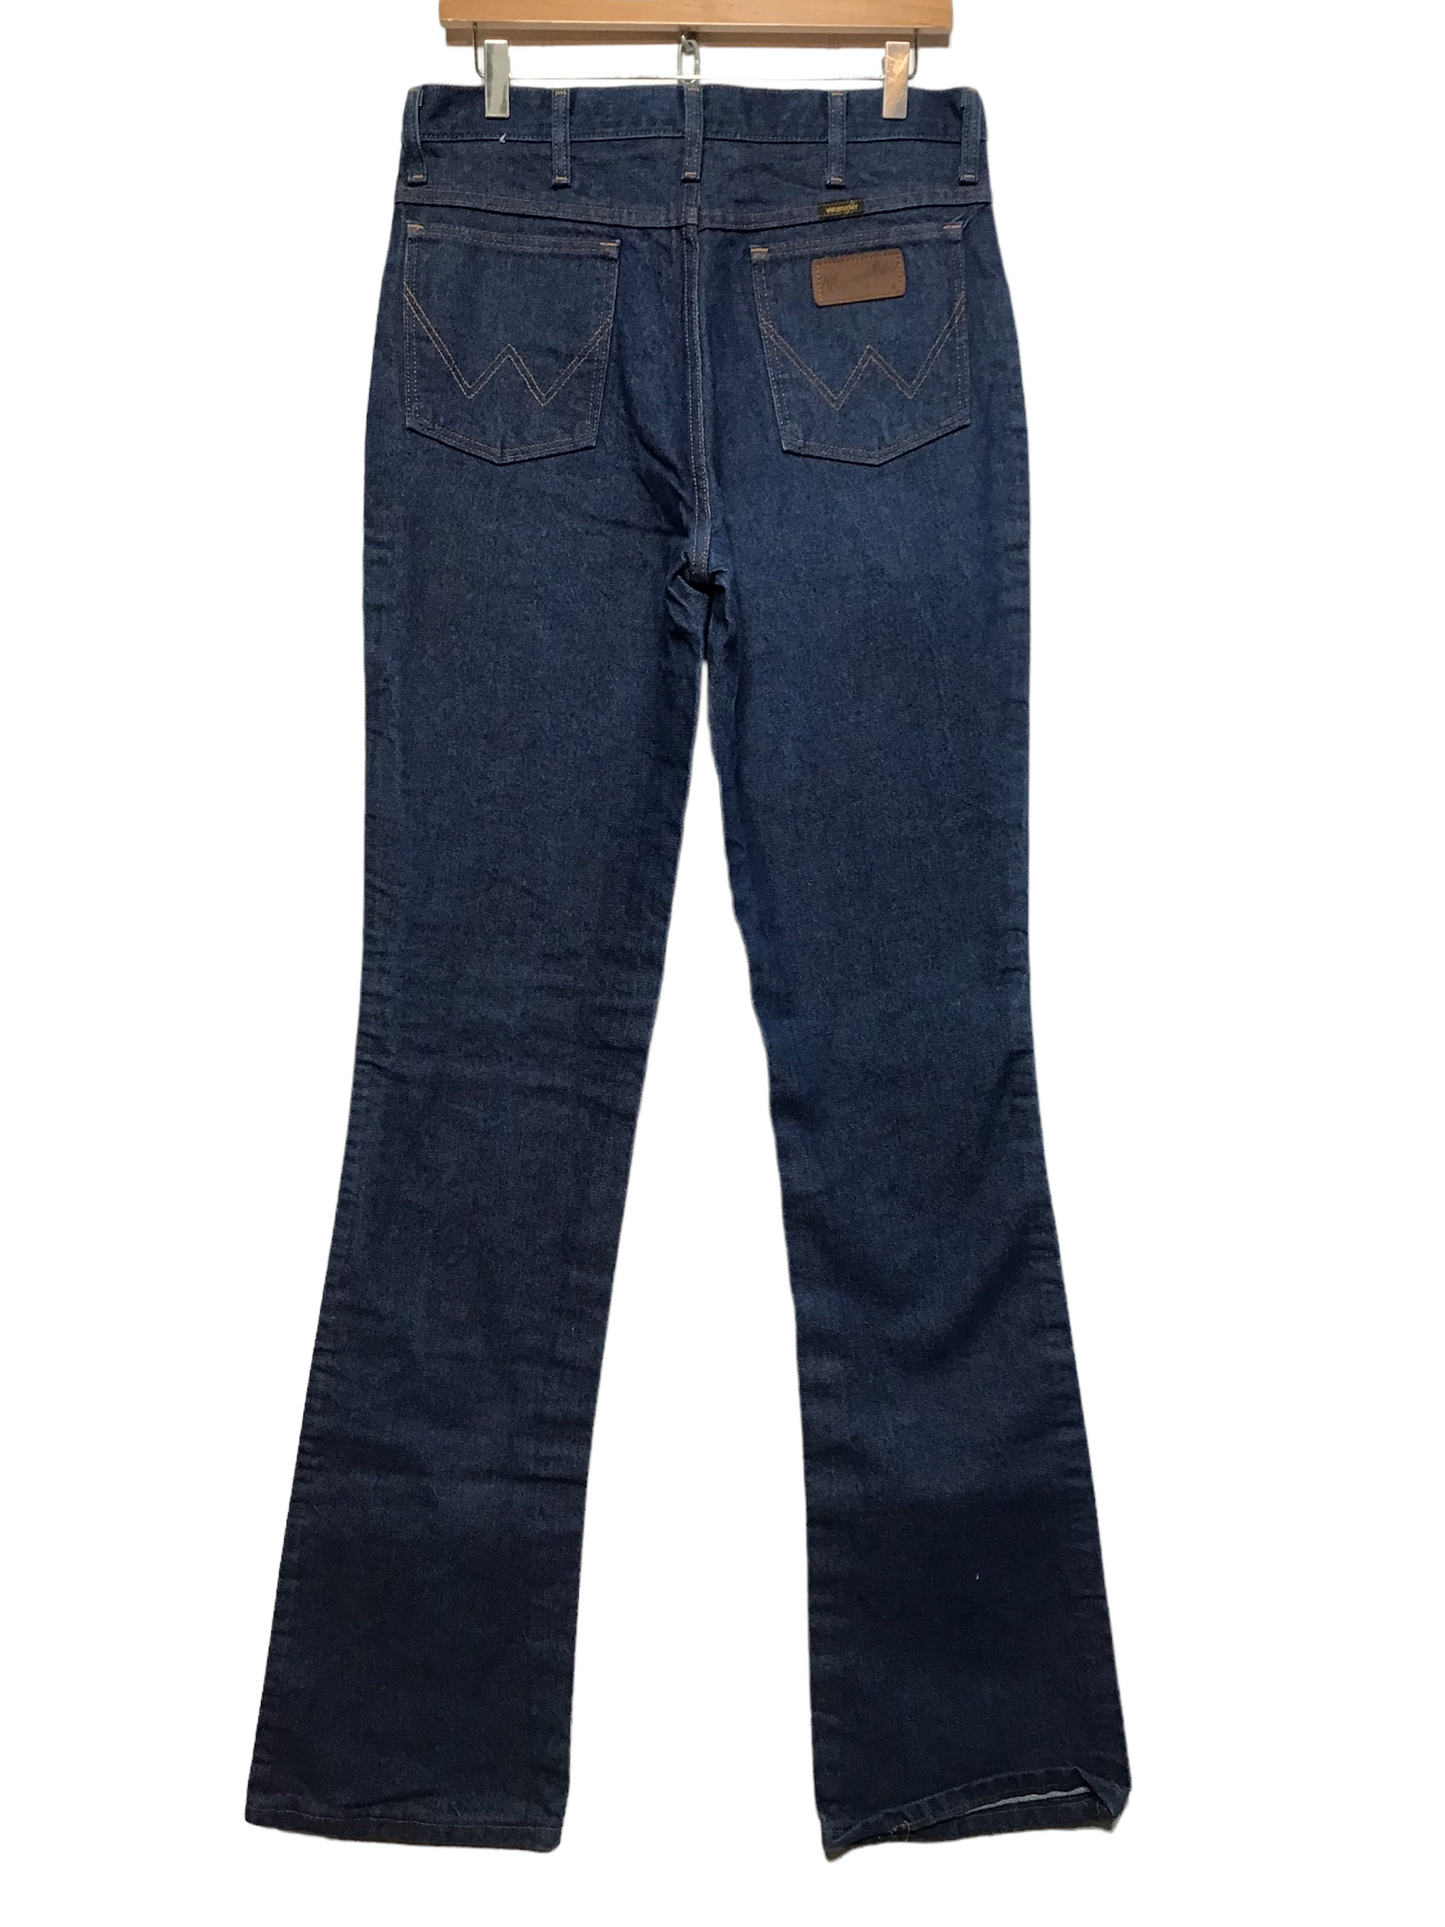 Wrangler Dark Denim Jeans (31X37)